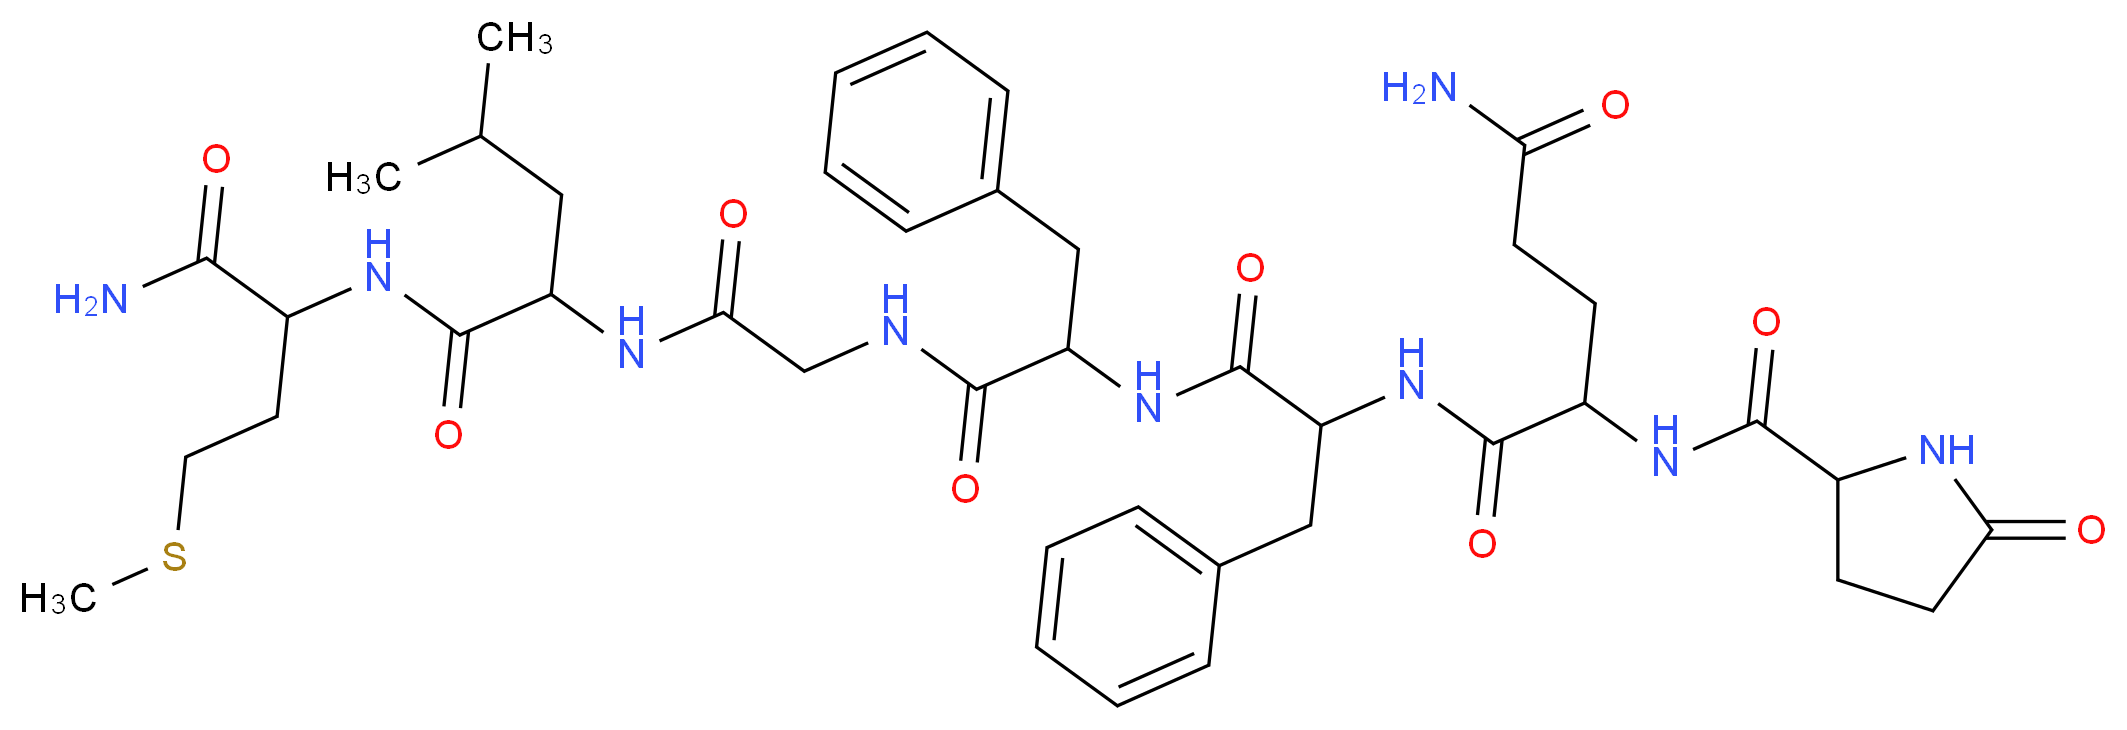 [pGlu5]-Substance P Fragment 5-11_Molecular_structure_CAS_56104-22-4)